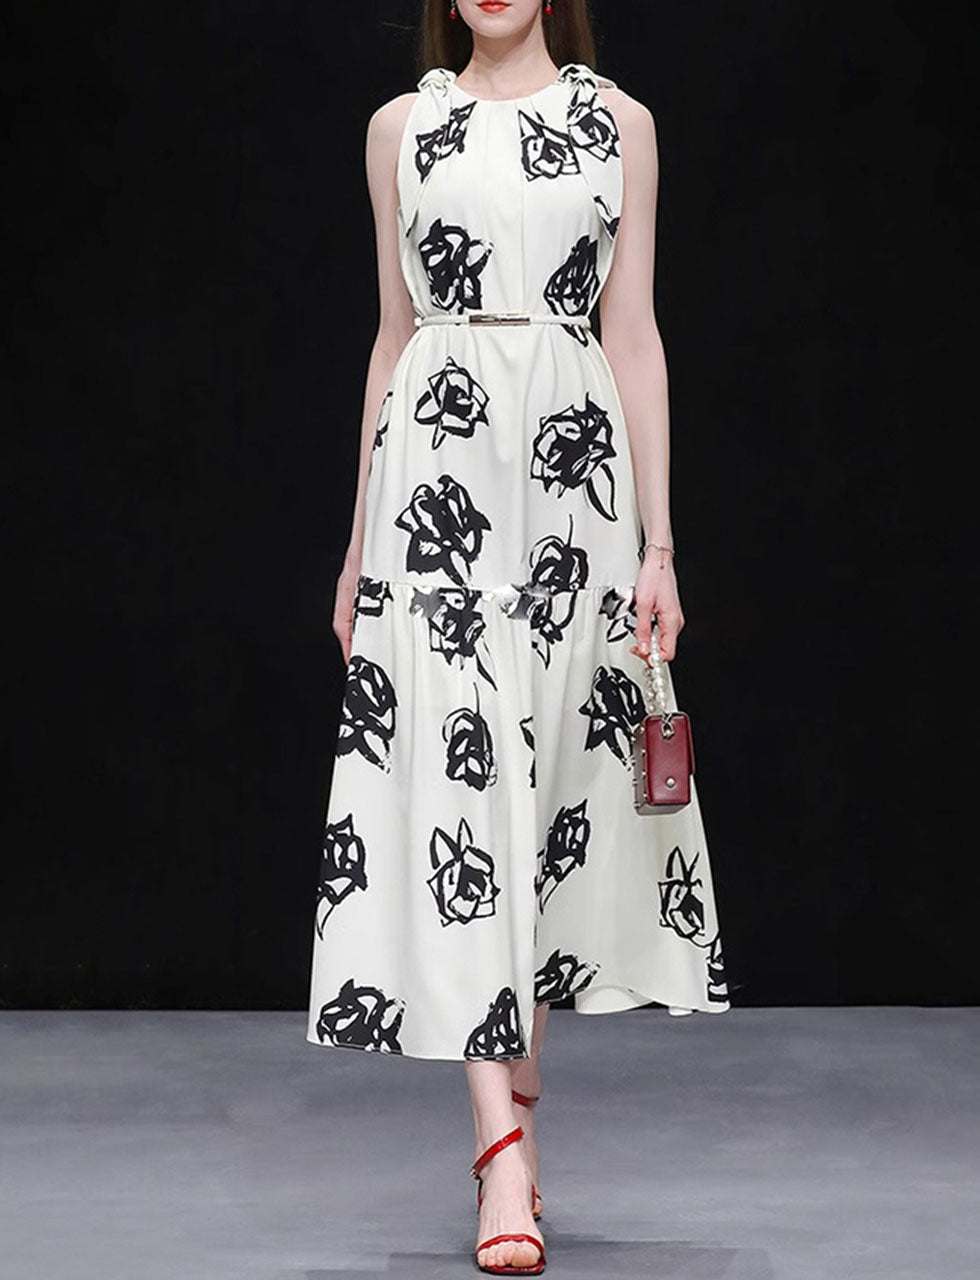 White Floral Print Sleeveless Vintage Style Maxi Dress